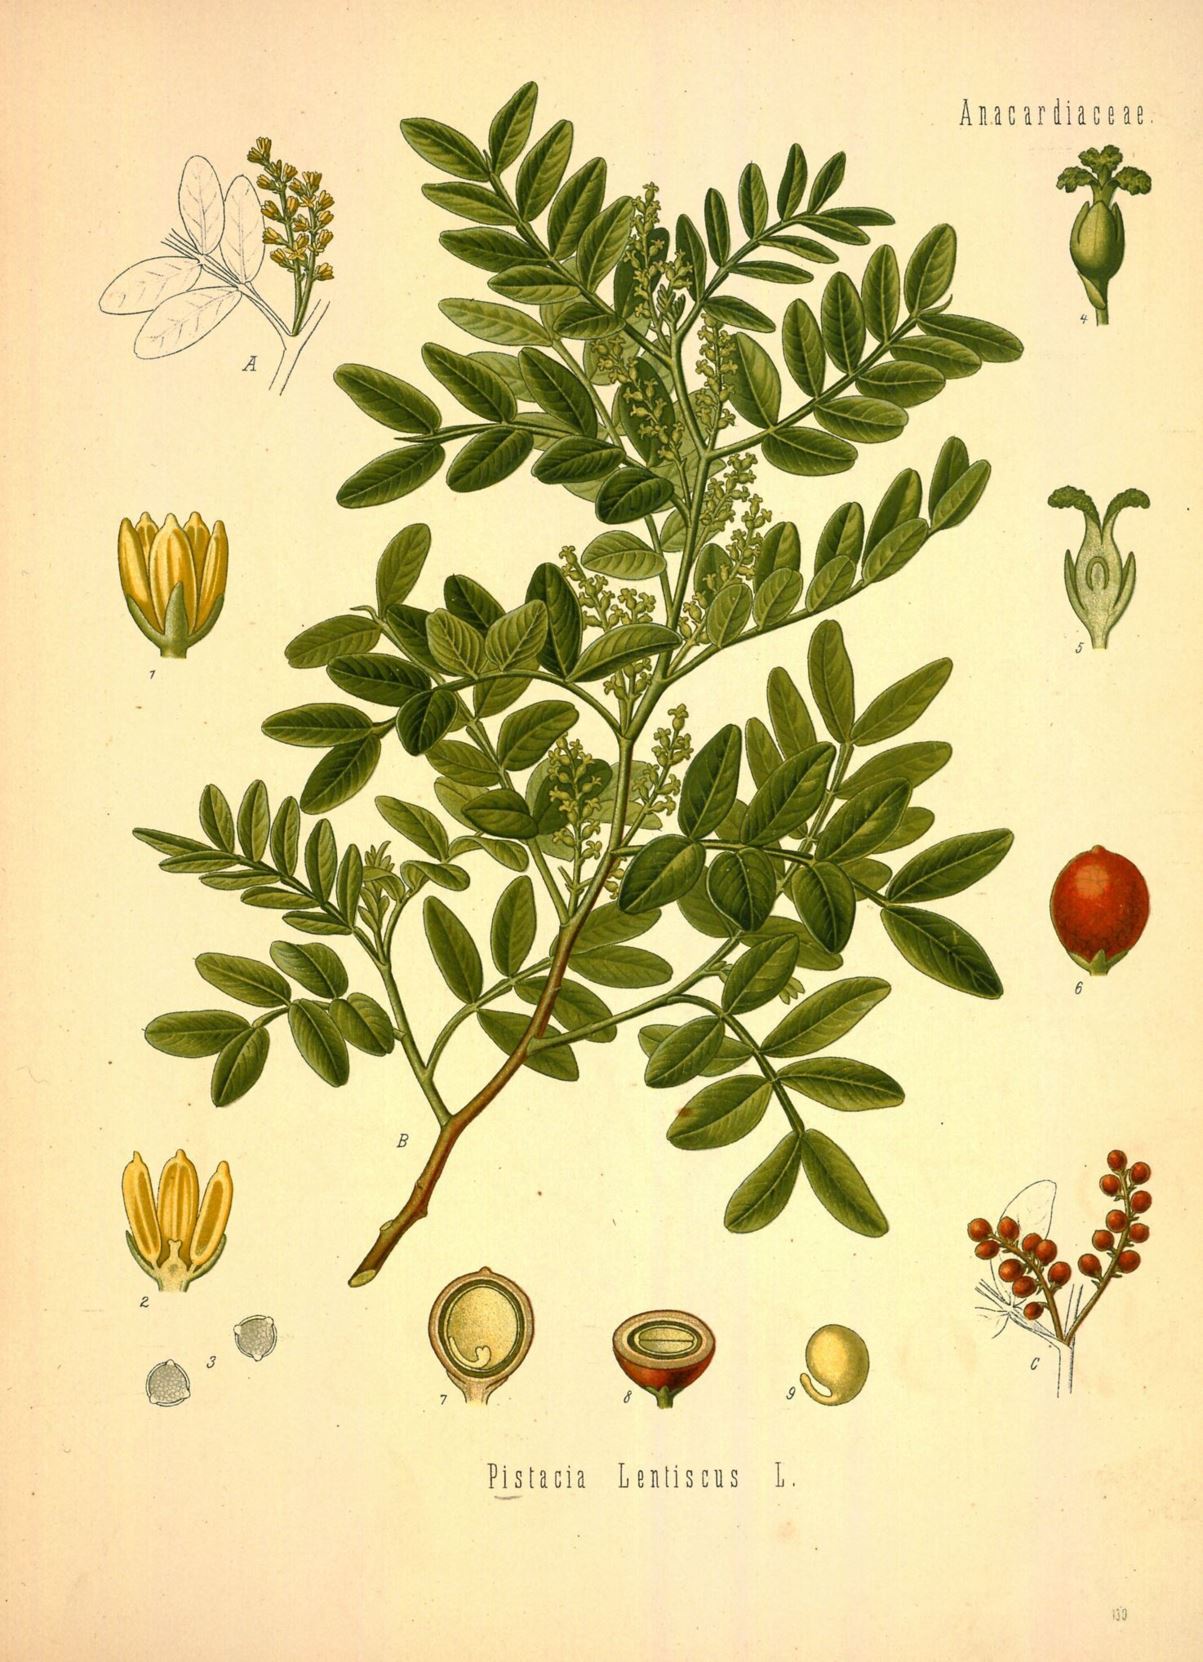 Pistacia lentiscus - Mastiekboom, Mastic